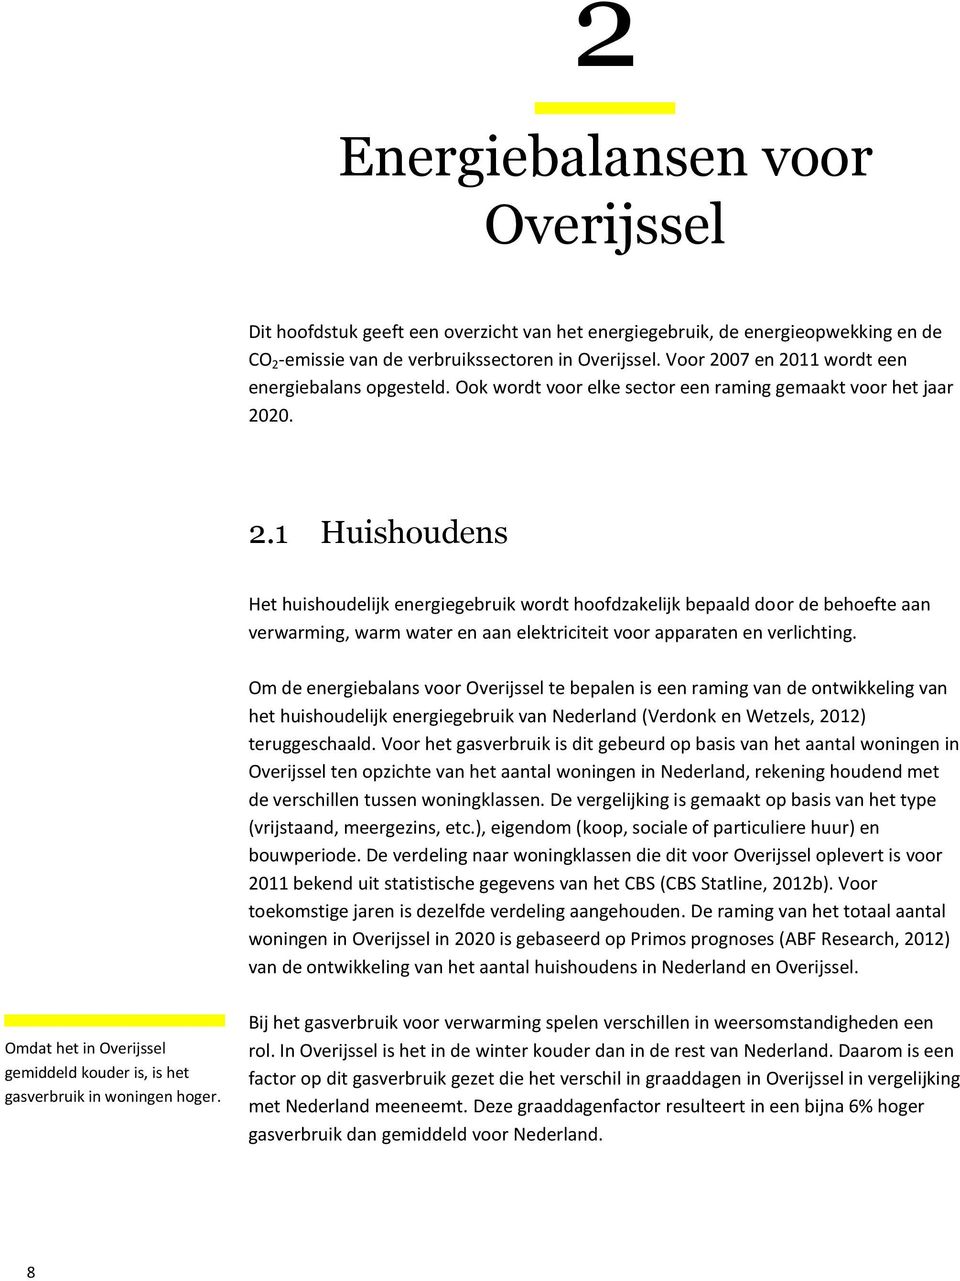 Om de energiebalans voor Overijssel te bepalen is een raming van de ontwikkeling van het huishoudelijk energiegebruik van Nederland (Verdonk en Wetzels, 2012) teruggeschaald.